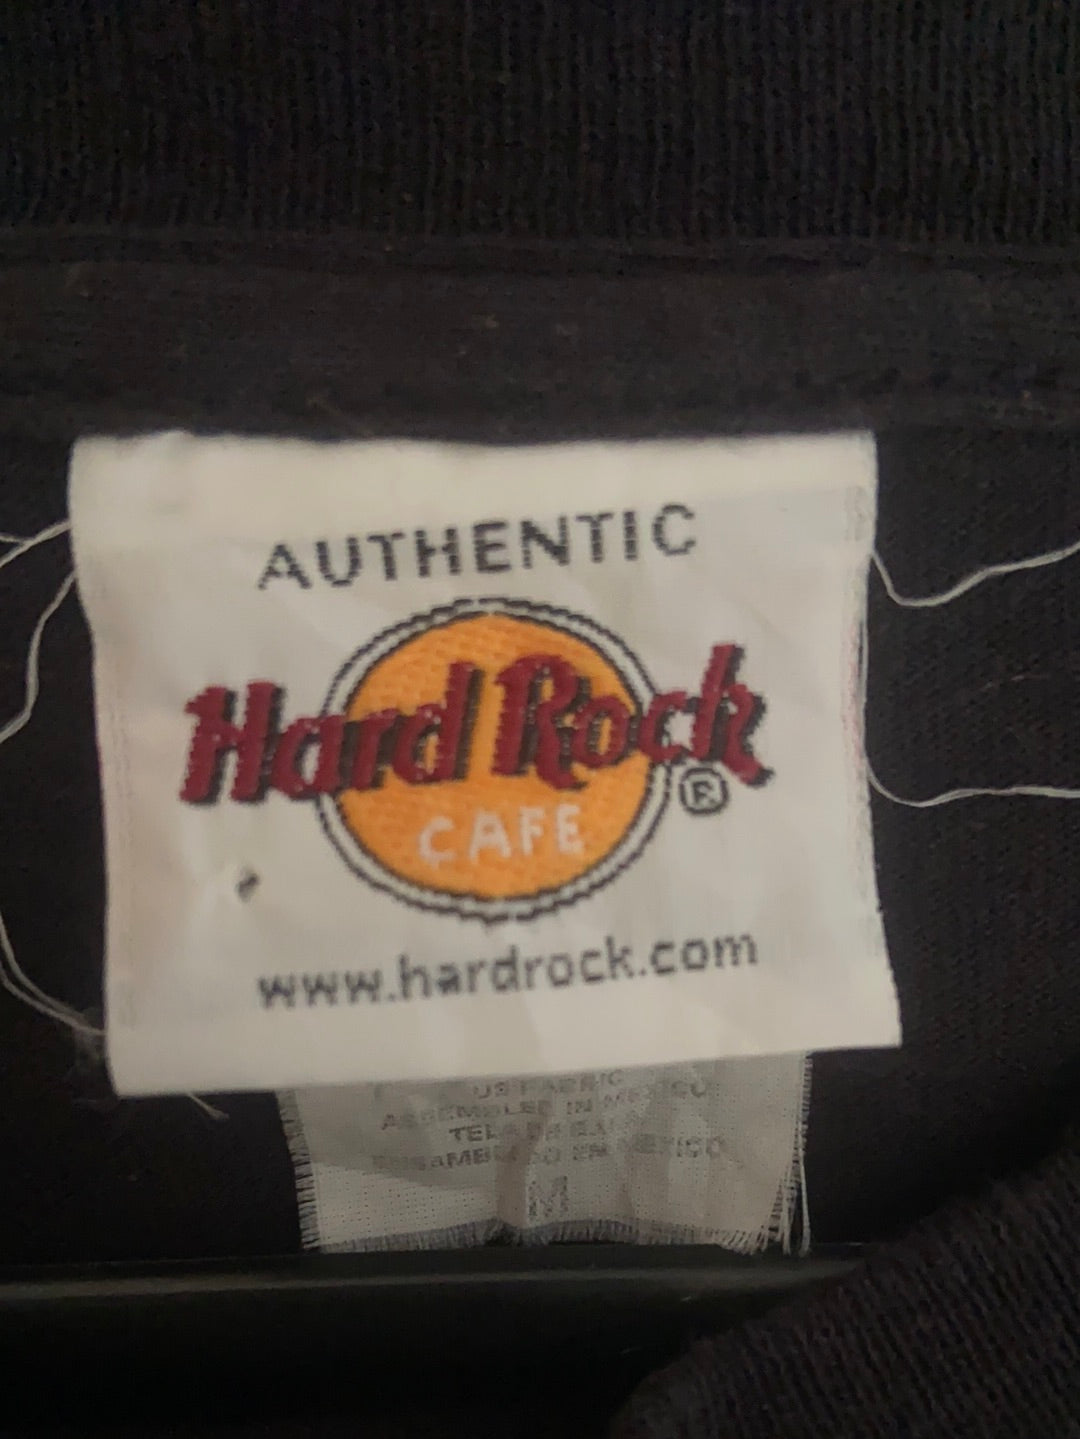 Hard Rock Cafe Tee - Medium